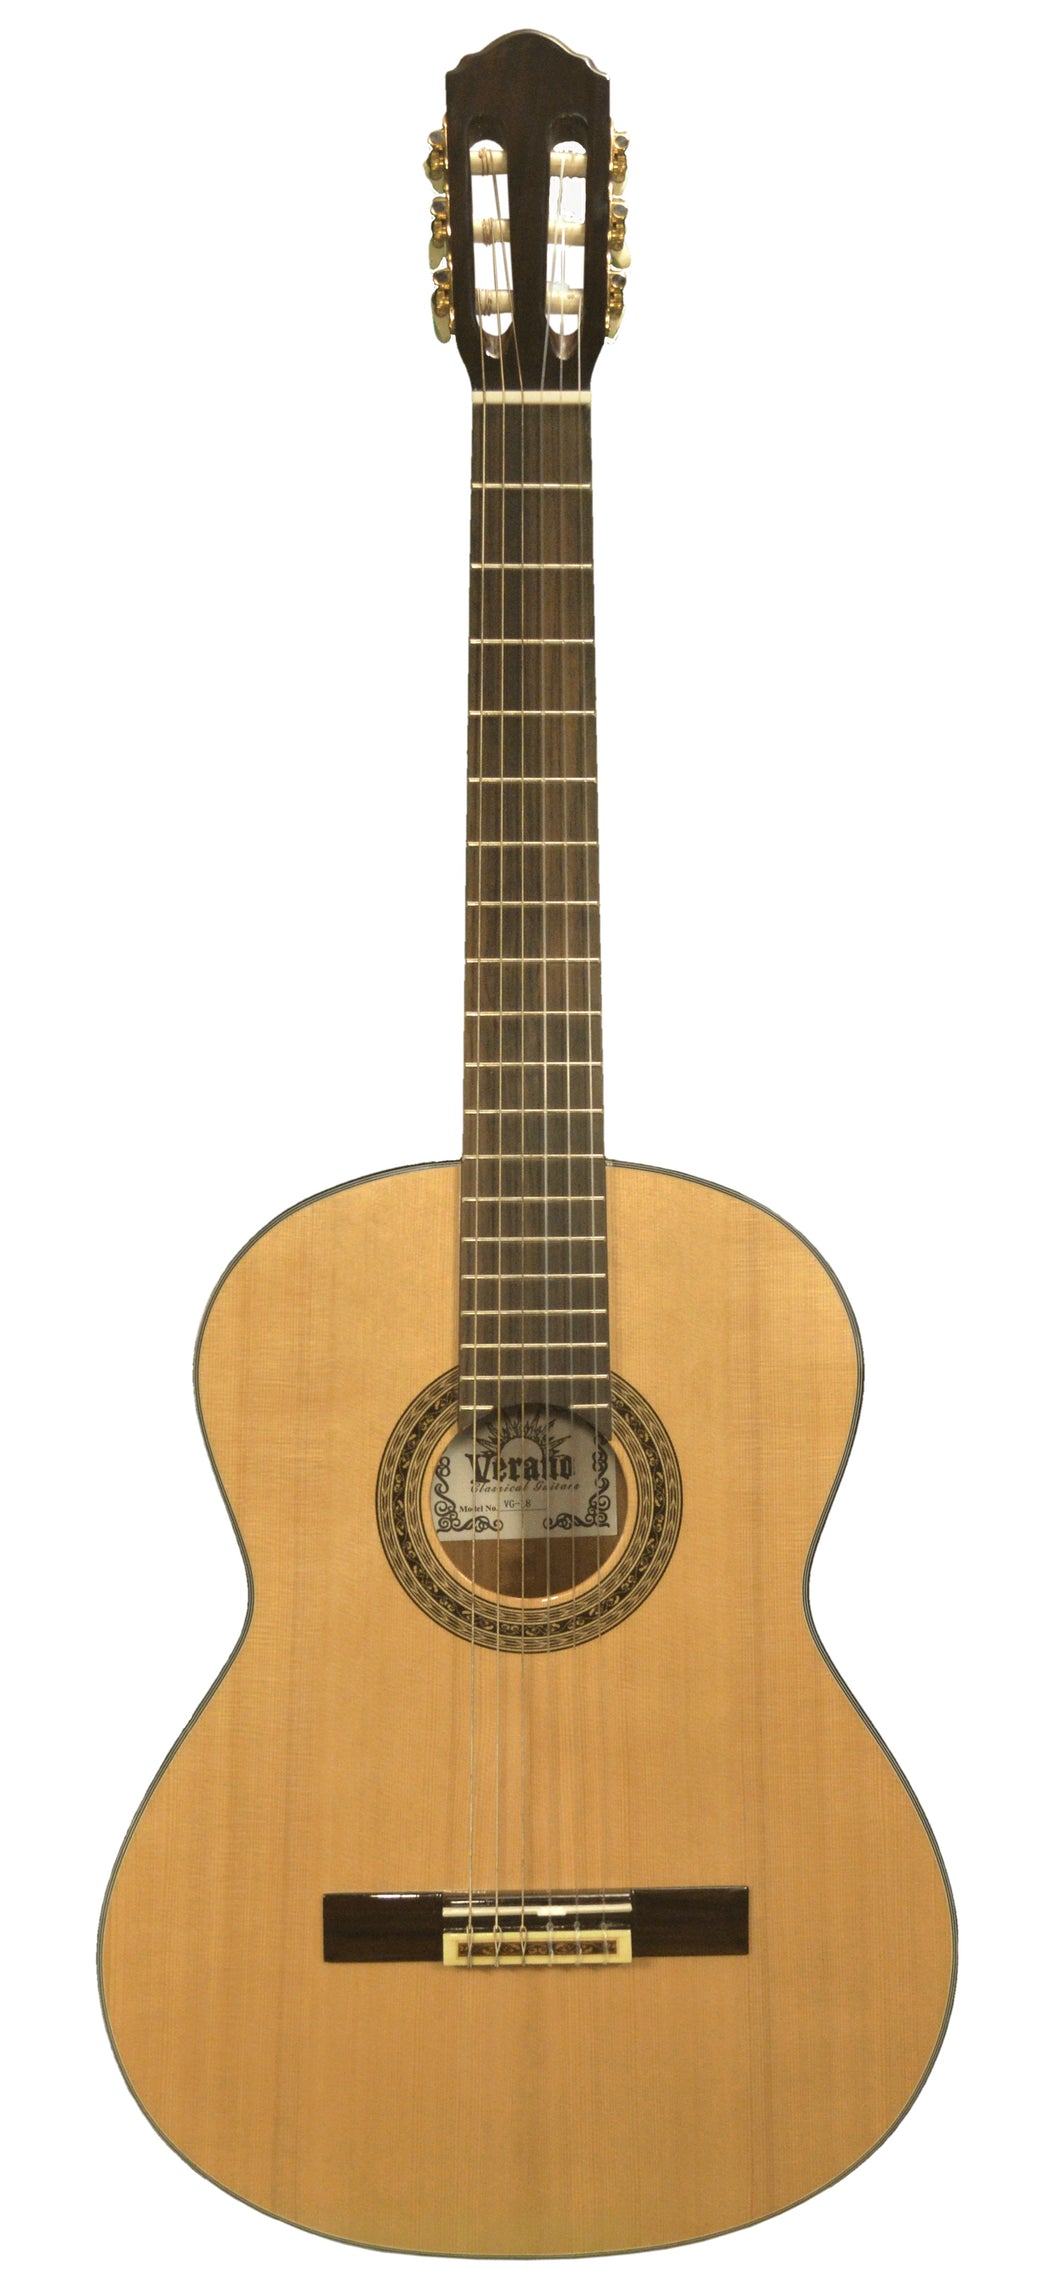 Verano VG-18 Cedar Mahogany Classical Guitar